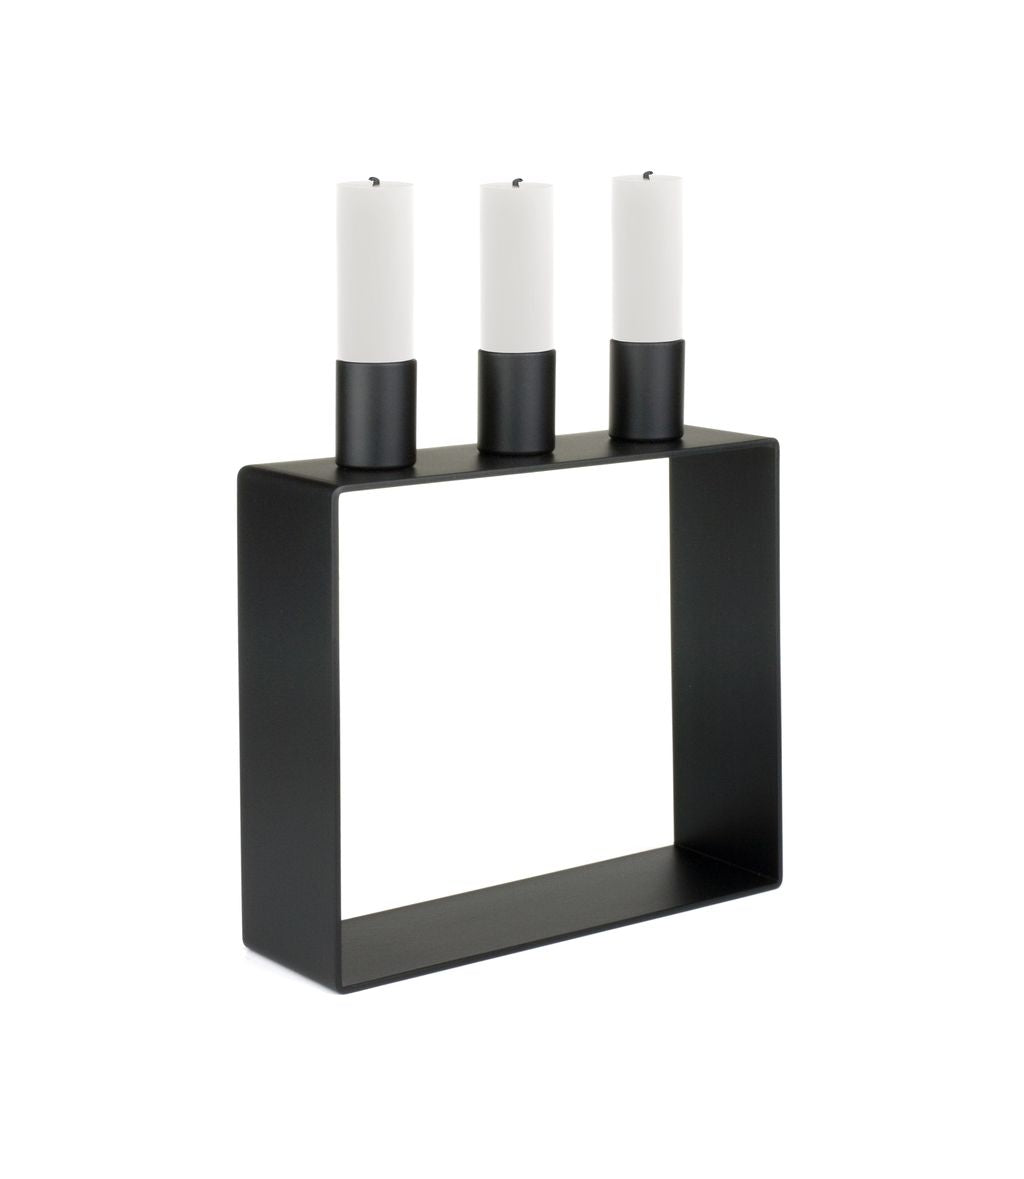 Novoform Design Frame 3 Candlestick